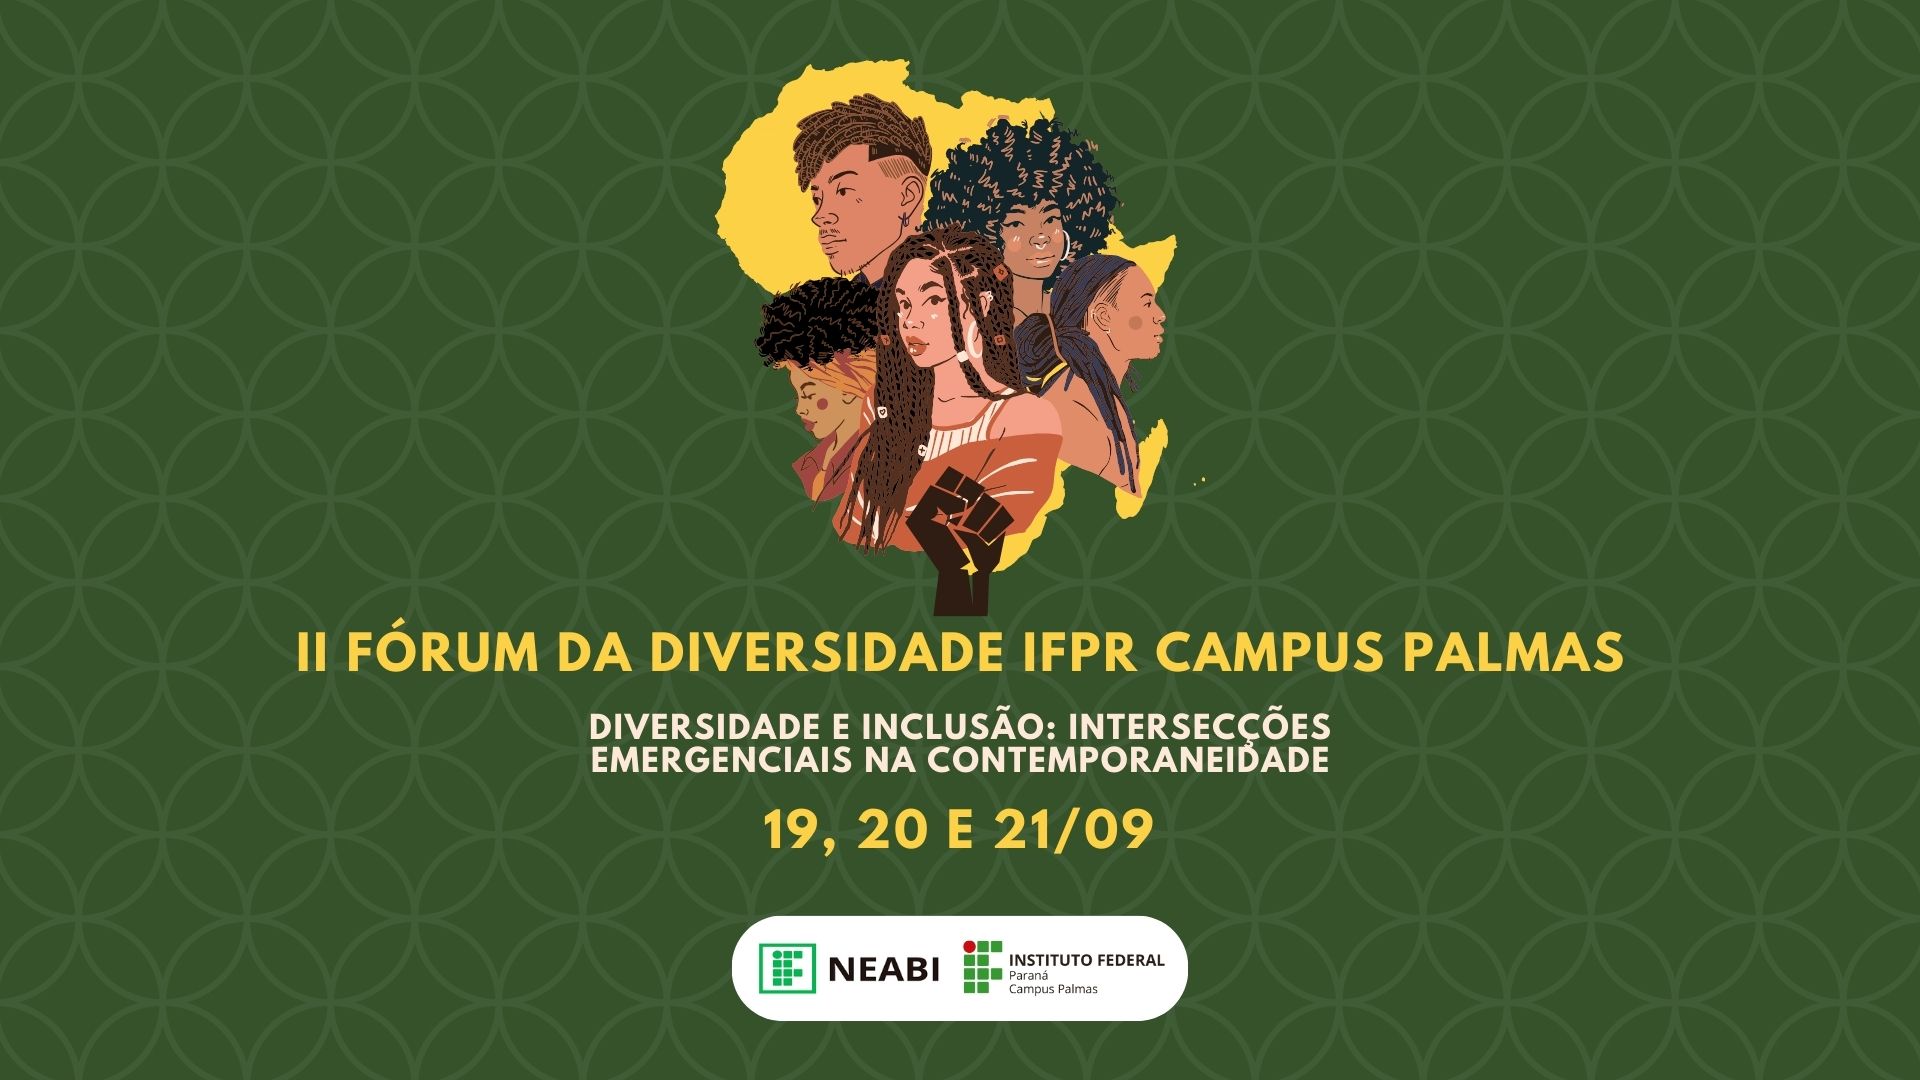 IFTM II Fórum de Inclusão e Diversidade (FID): reflexões e perspectivas  sobre inclusão e diversidade no IFTM